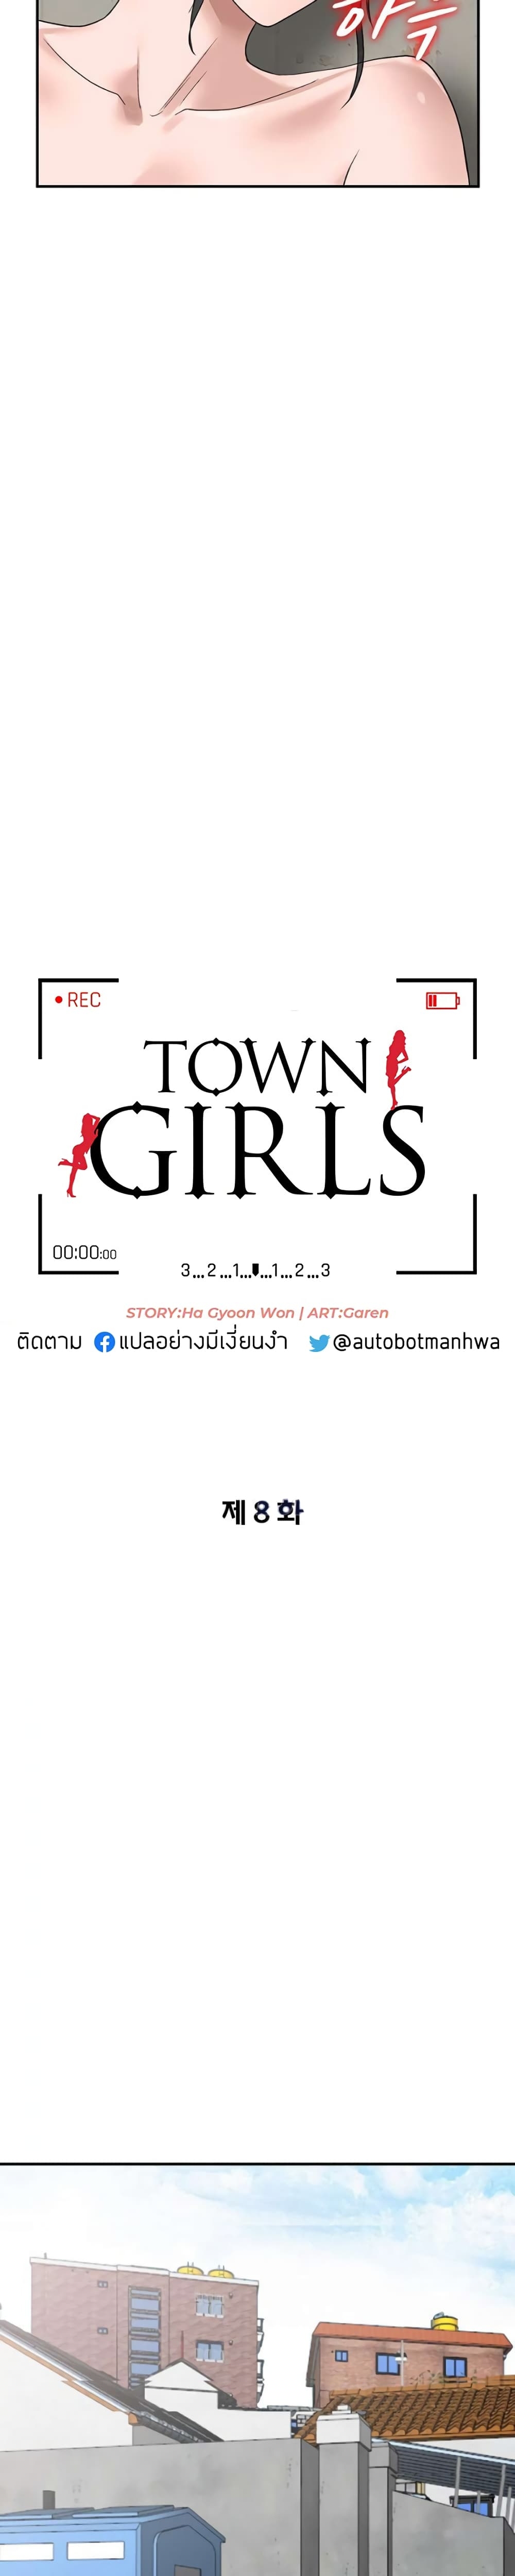 Town Girls 8 (4)